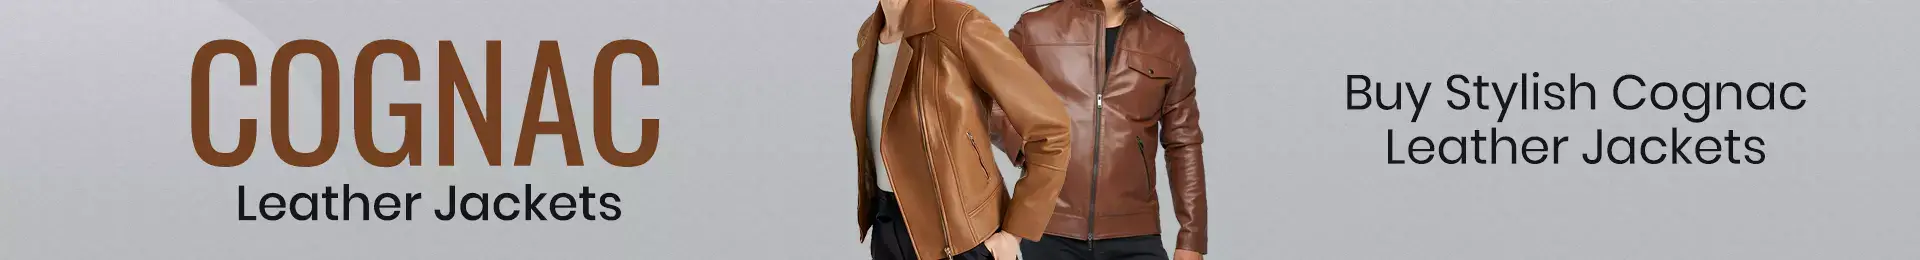 cognac leather jacket, cognac leather jacket mens, cognac leather jacket womens